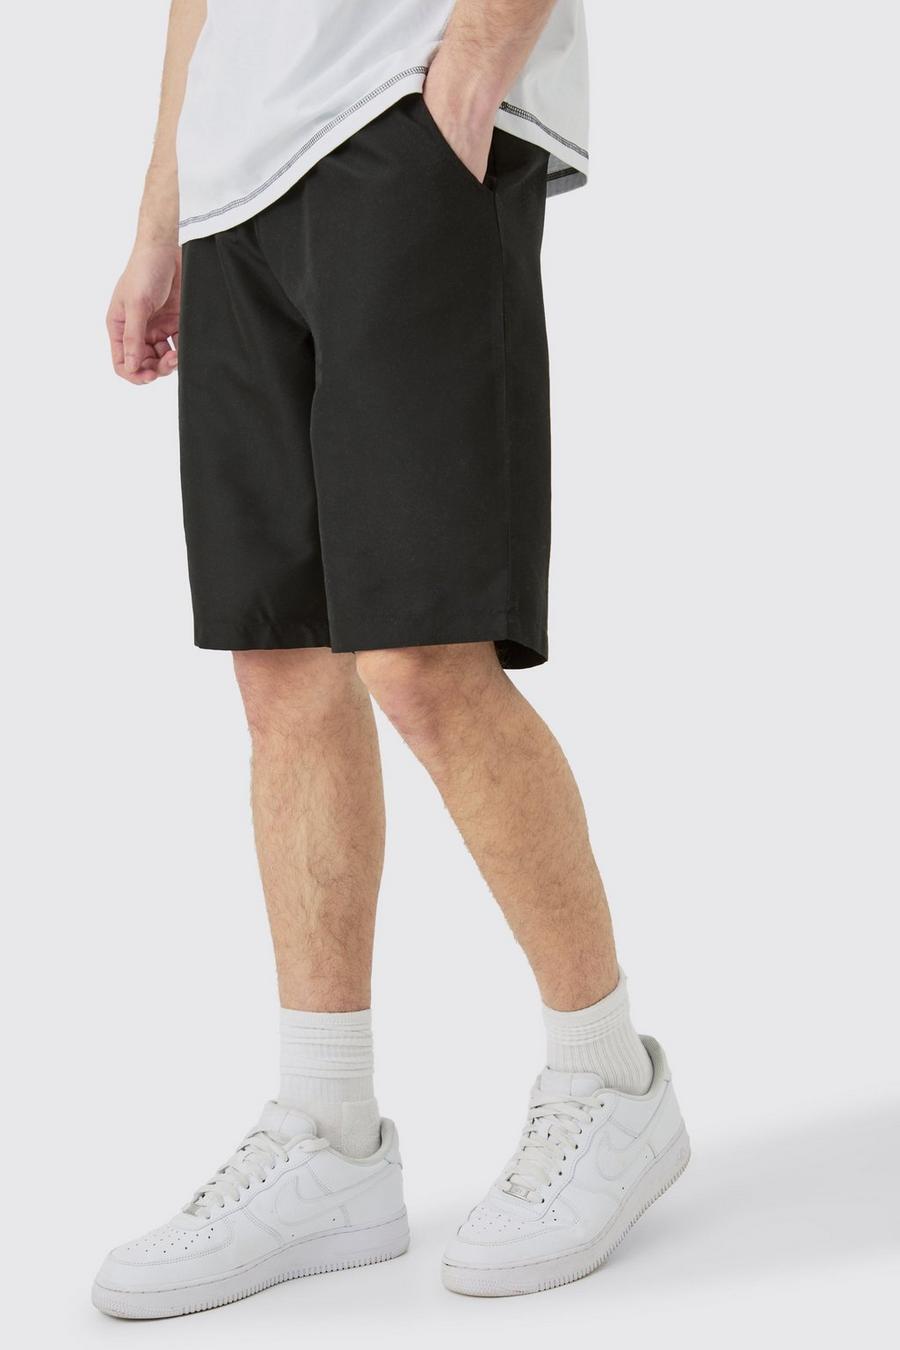 Tall lockere Shorts mit elastischem Bund, Black